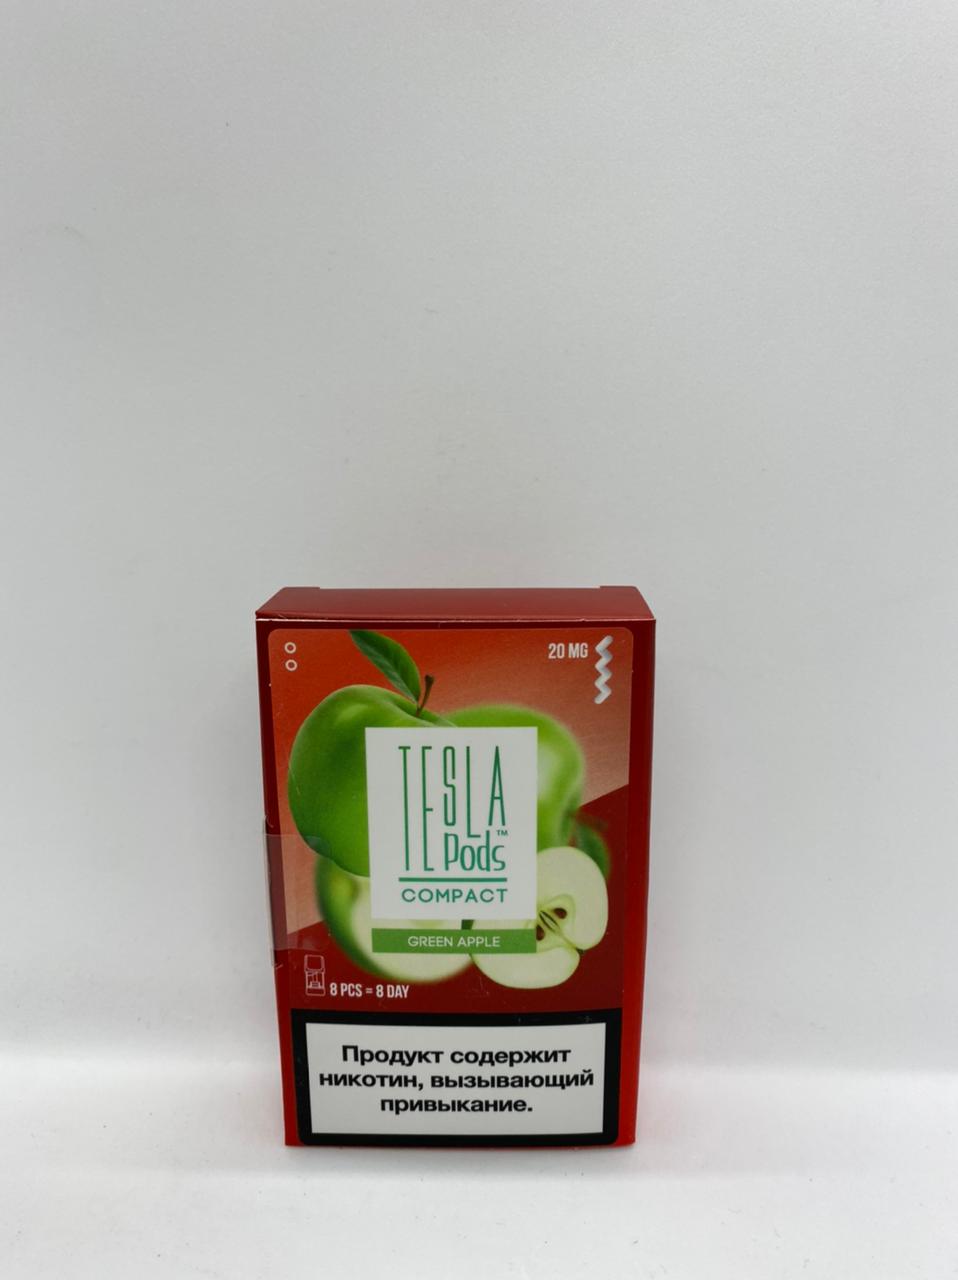 Набор TESLA pods Картридж Green apple 2% (8 картриджей) compact для Logic с доставкой по Москве и России